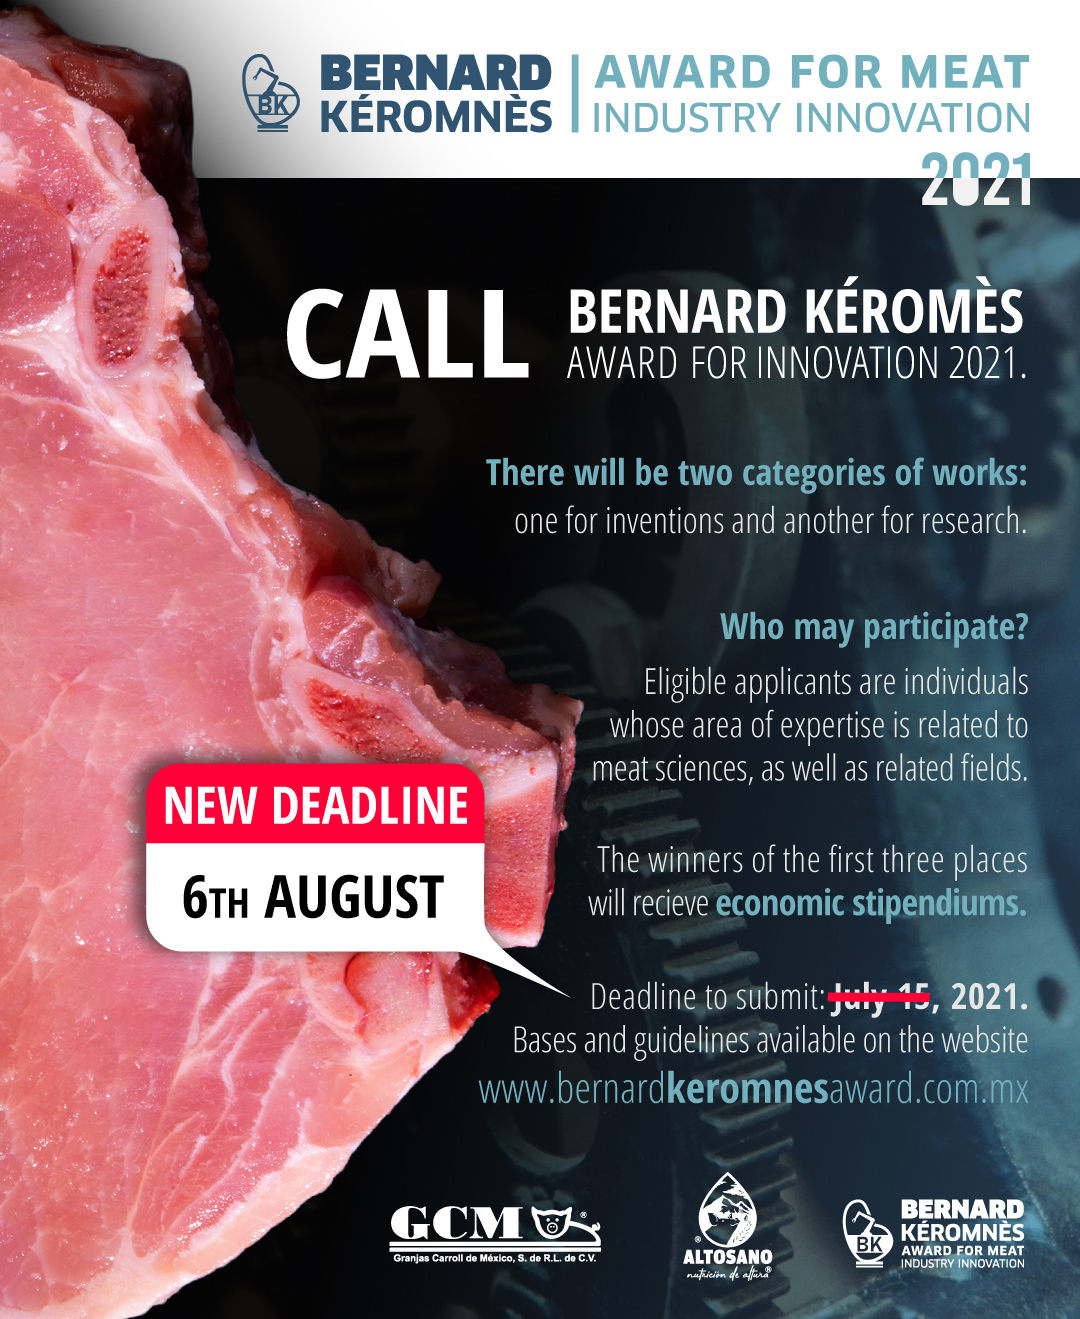 Se amplia fecha para participar en el “premio a la innovación Bernard Kéromnès